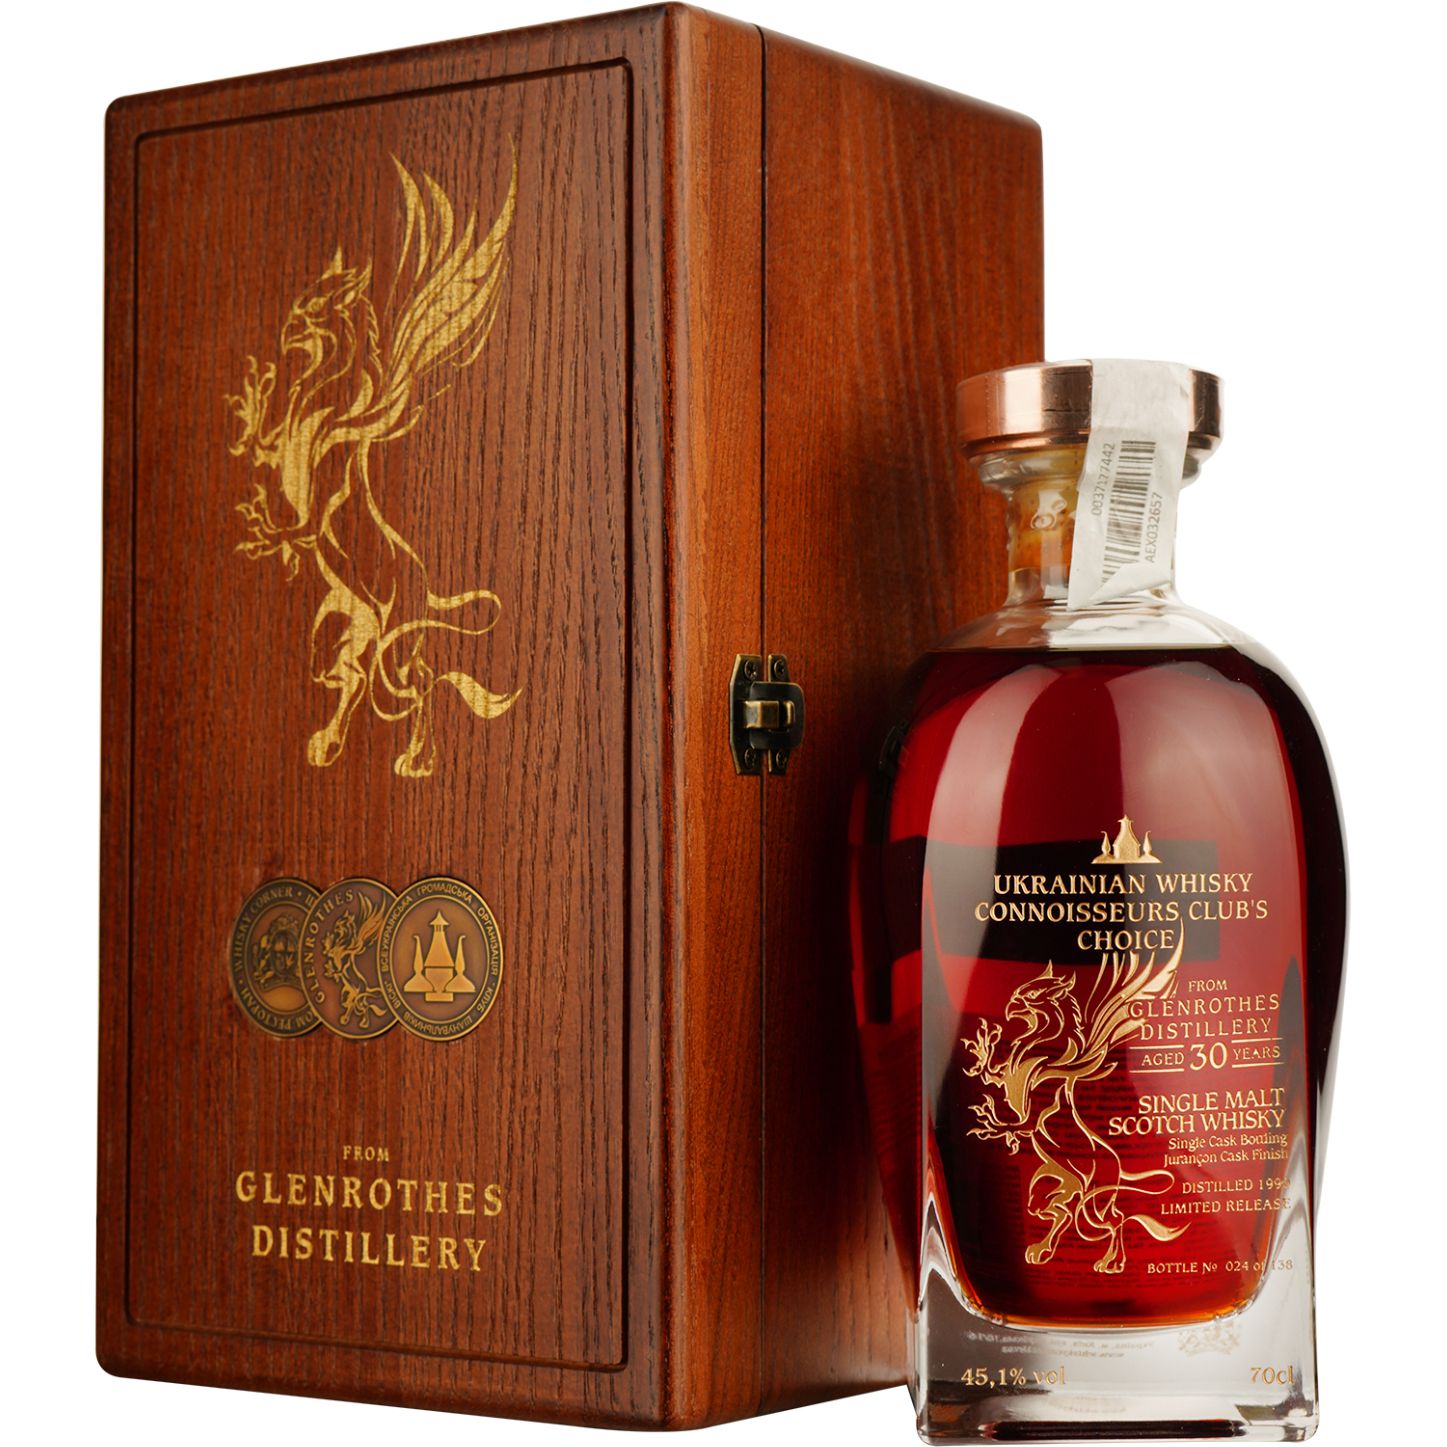 Віскі Glenrothes 30 Years Old Jurancon Single Malt Scotch Whisky, у подарунковій упаковці, 45,1%, 0,7 л - фото 1